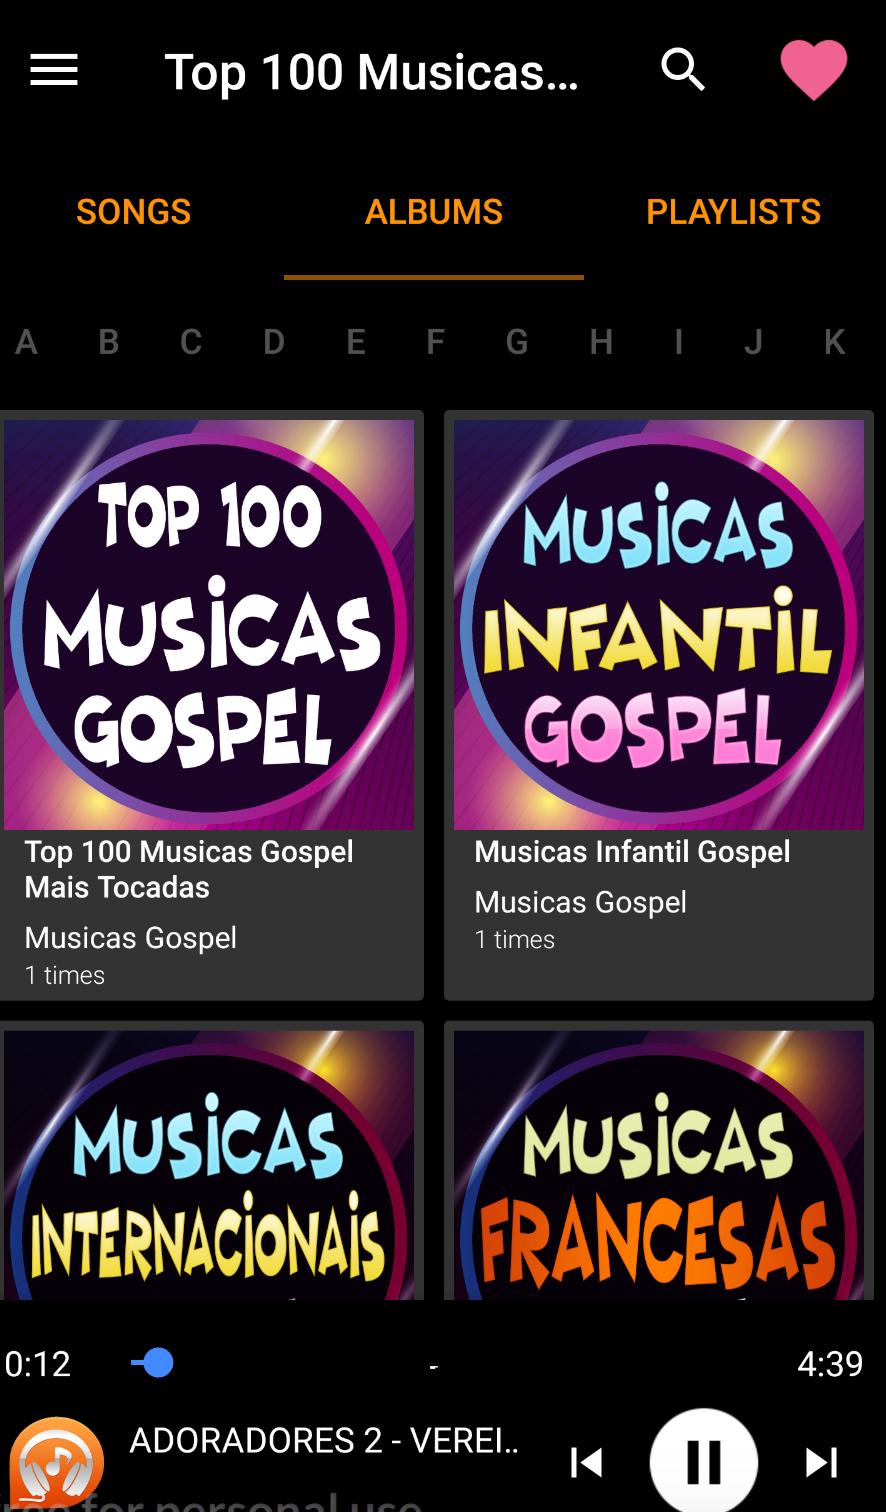 Top 100 Musicas Gospel Mais Tocadas for Android - APK Download